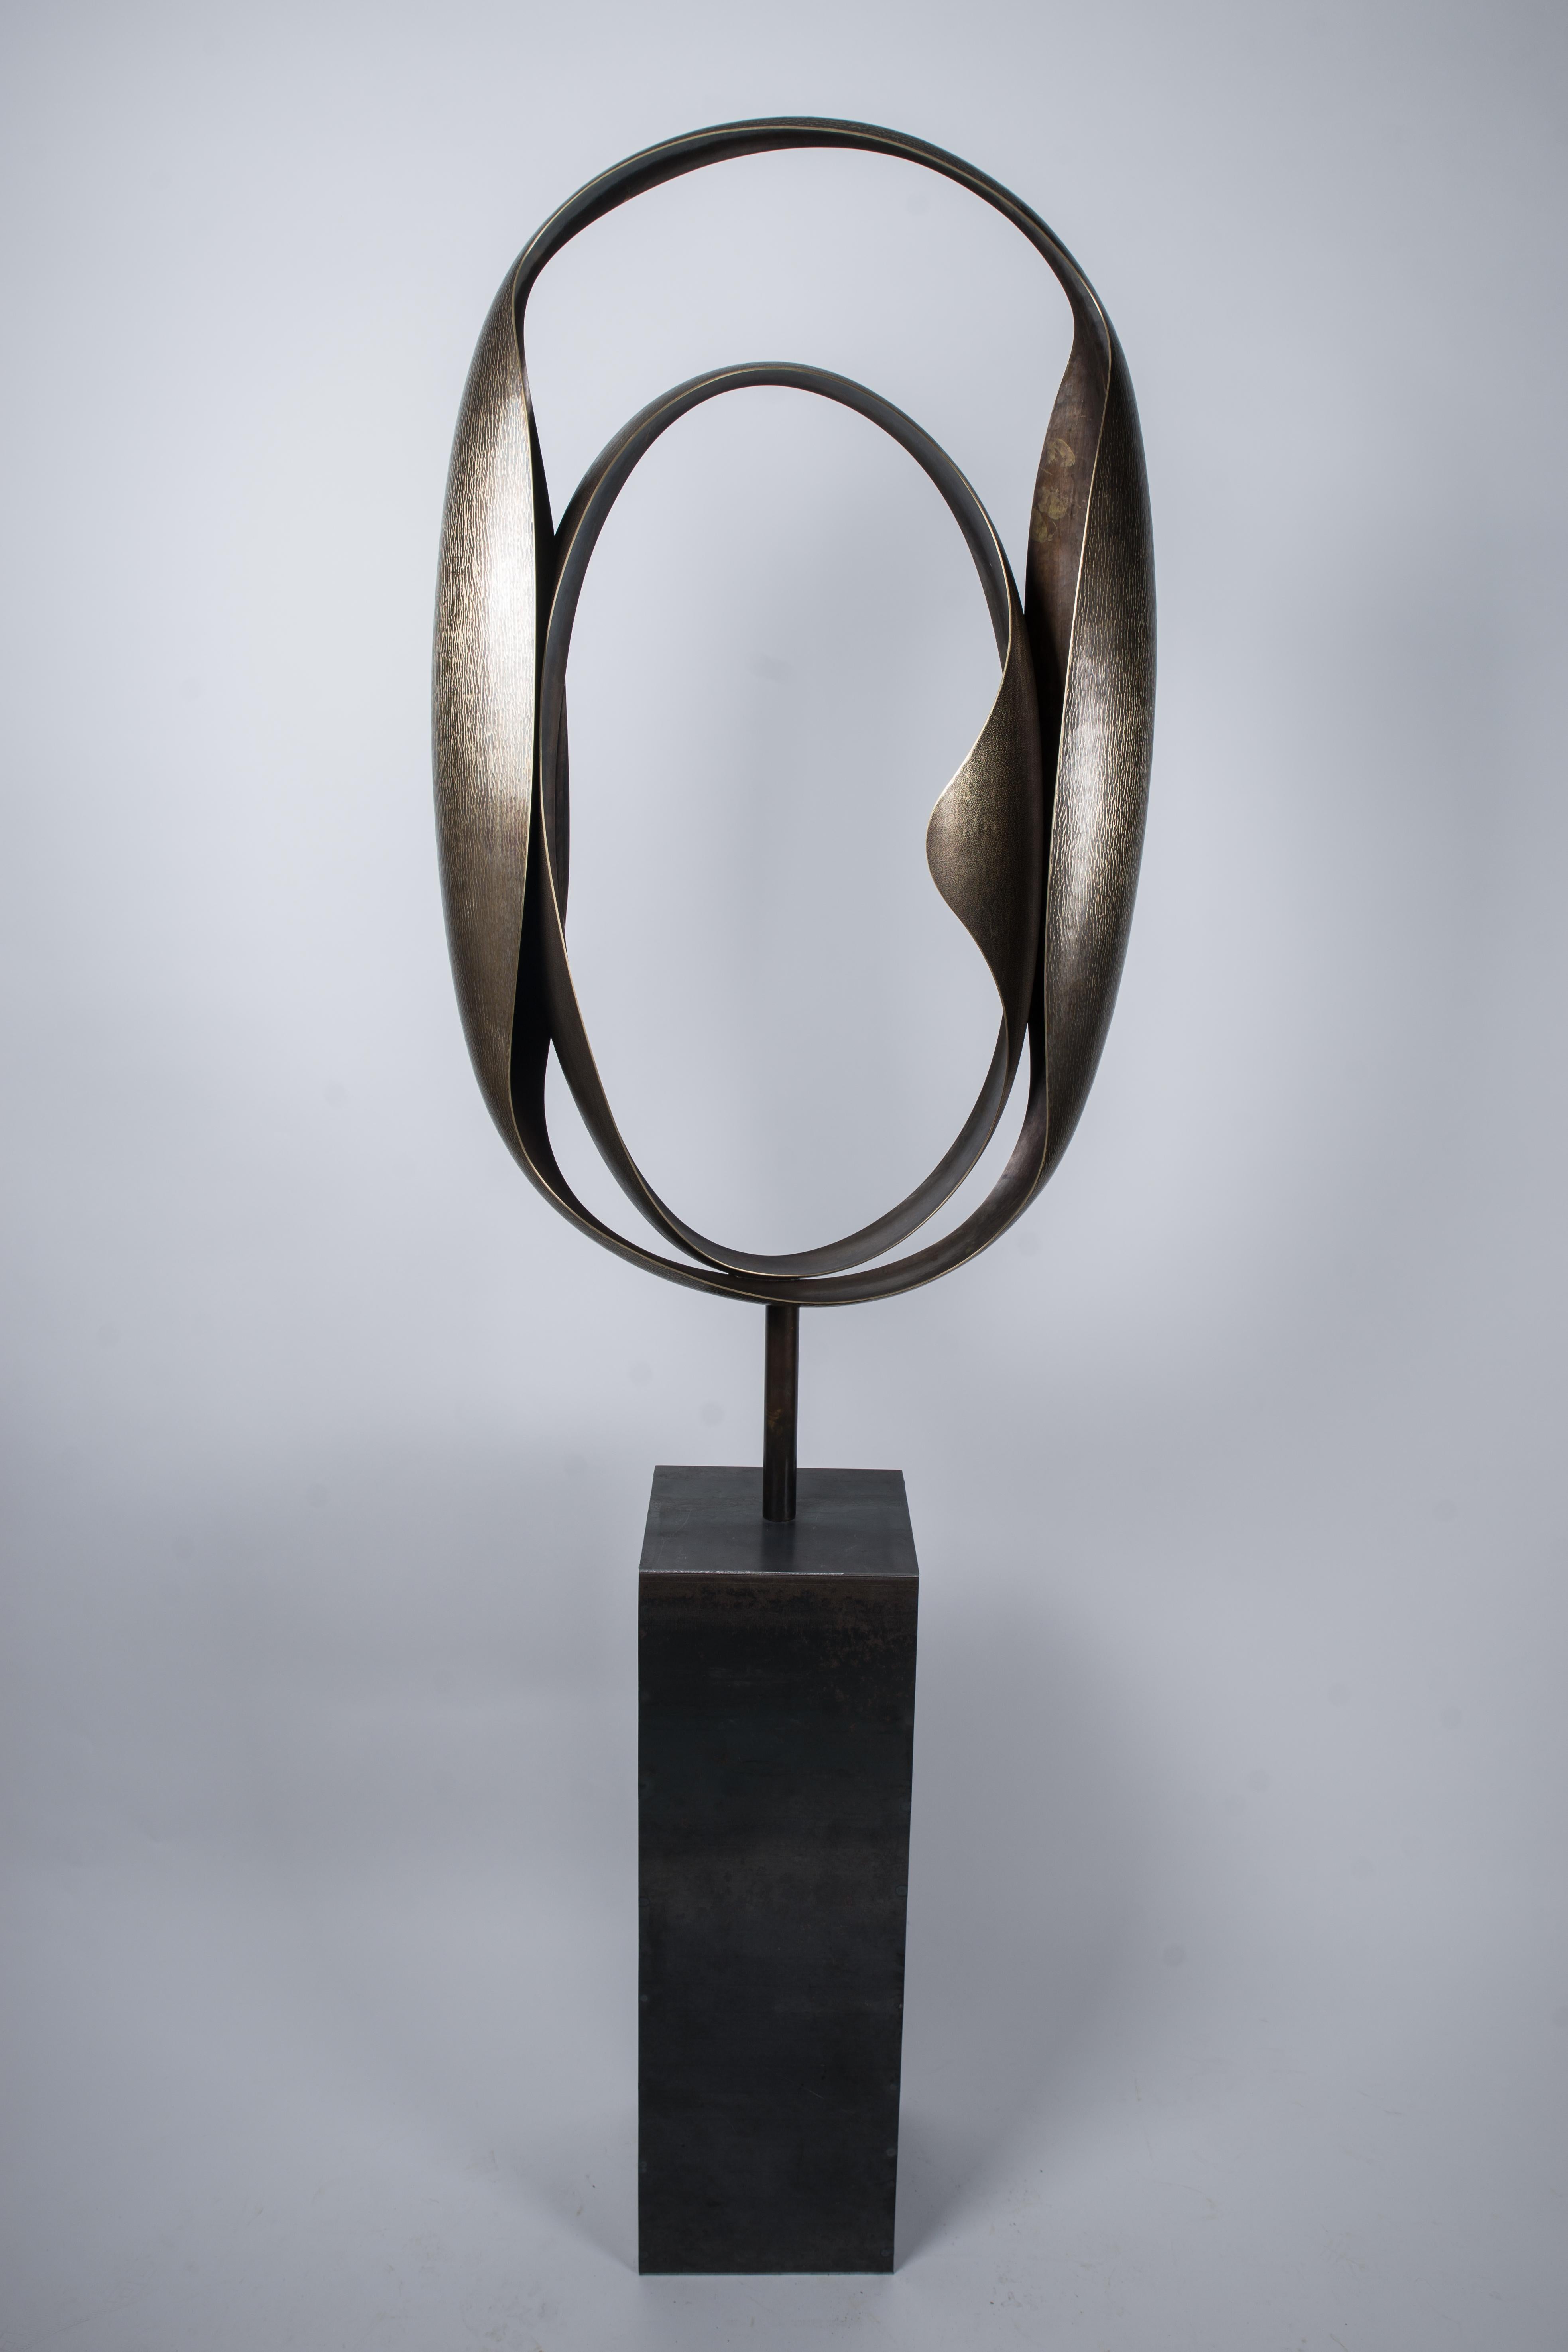 Elie Hirsch Abstract Sculpture - "Couple" Monumental Abstract Brass Sculpture